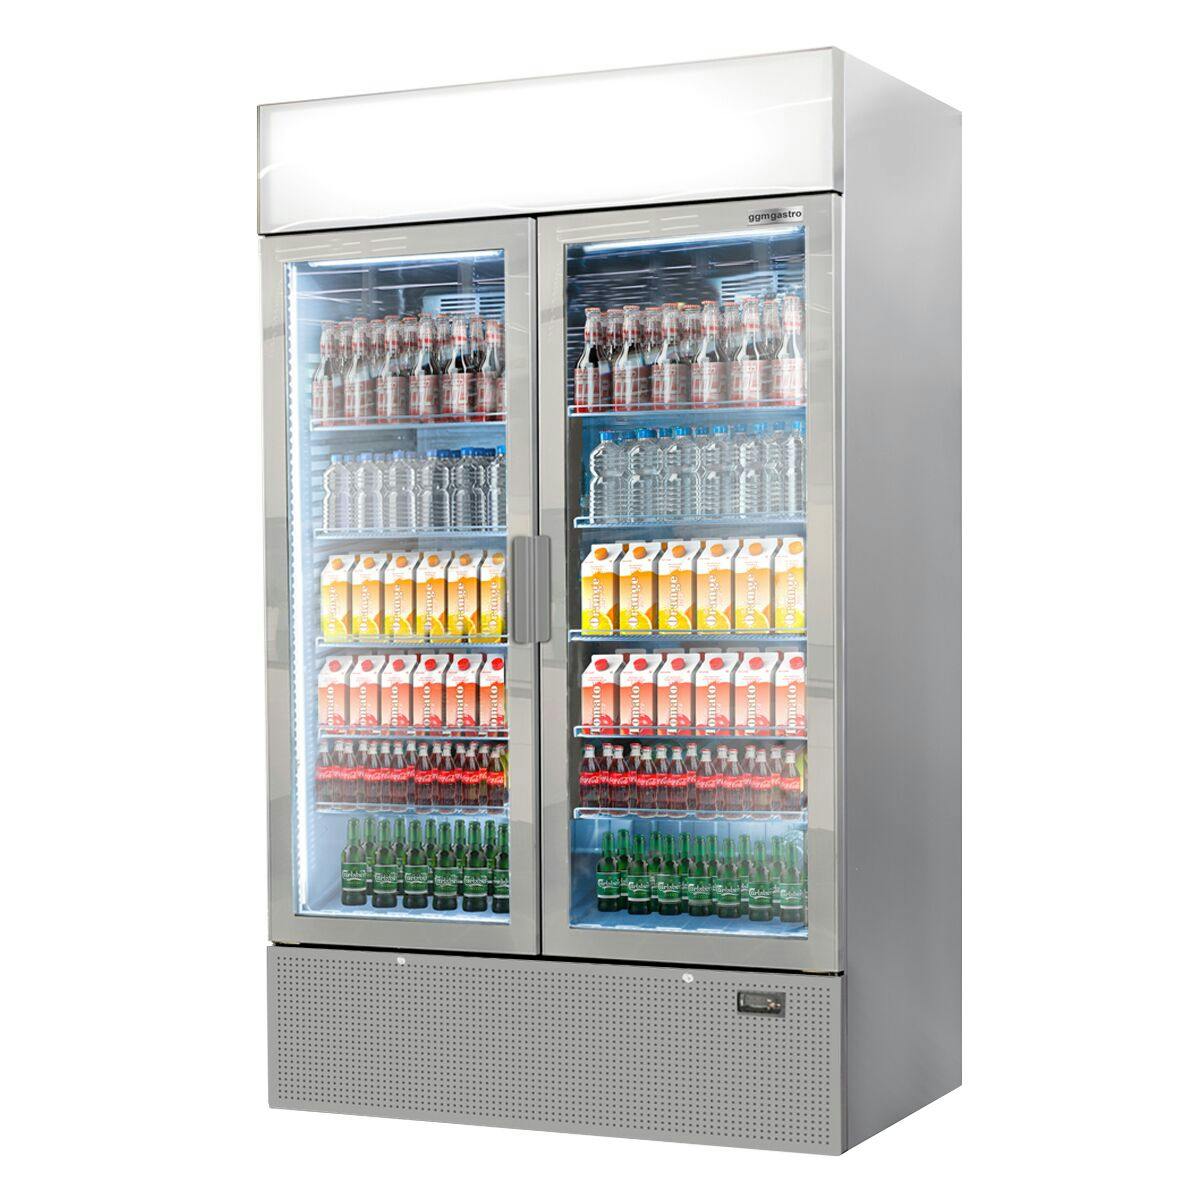 (2 pieces) Beverage refrigerator - 2096 litres (total) - grey